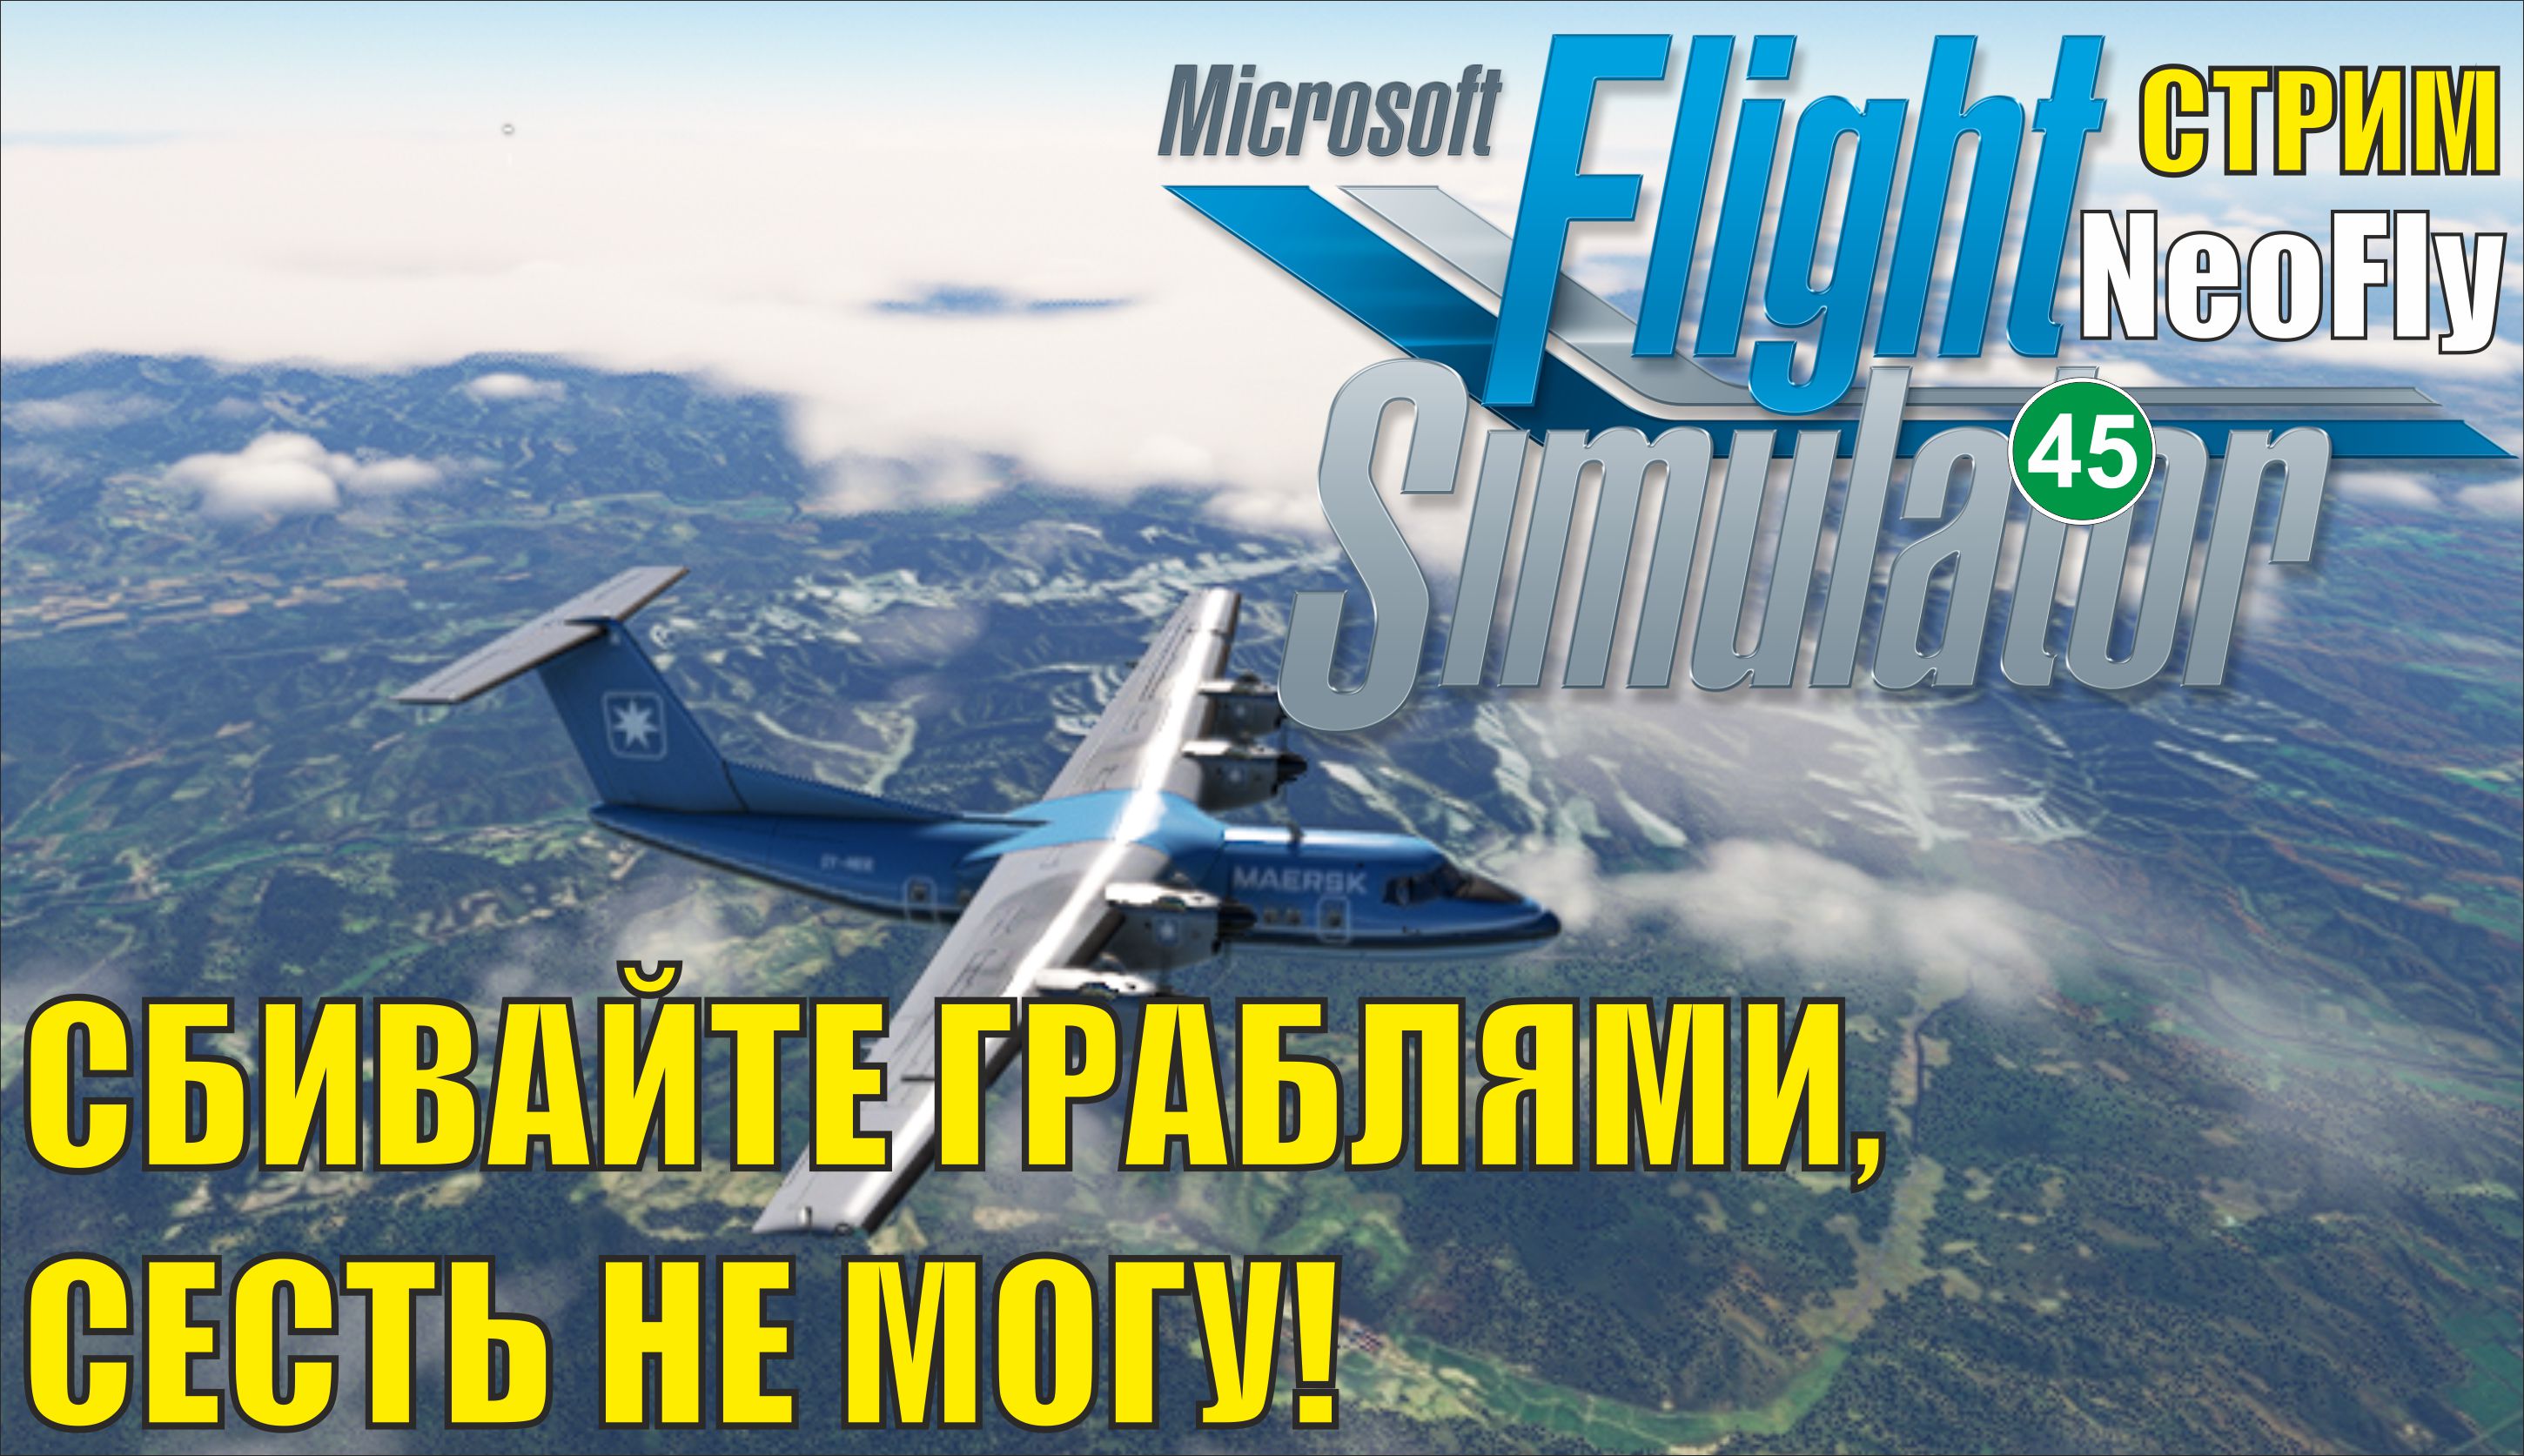 Microsoft Flight Simulator 2020 (NeoFly) - Сбивайте граблями, сесть не могу!